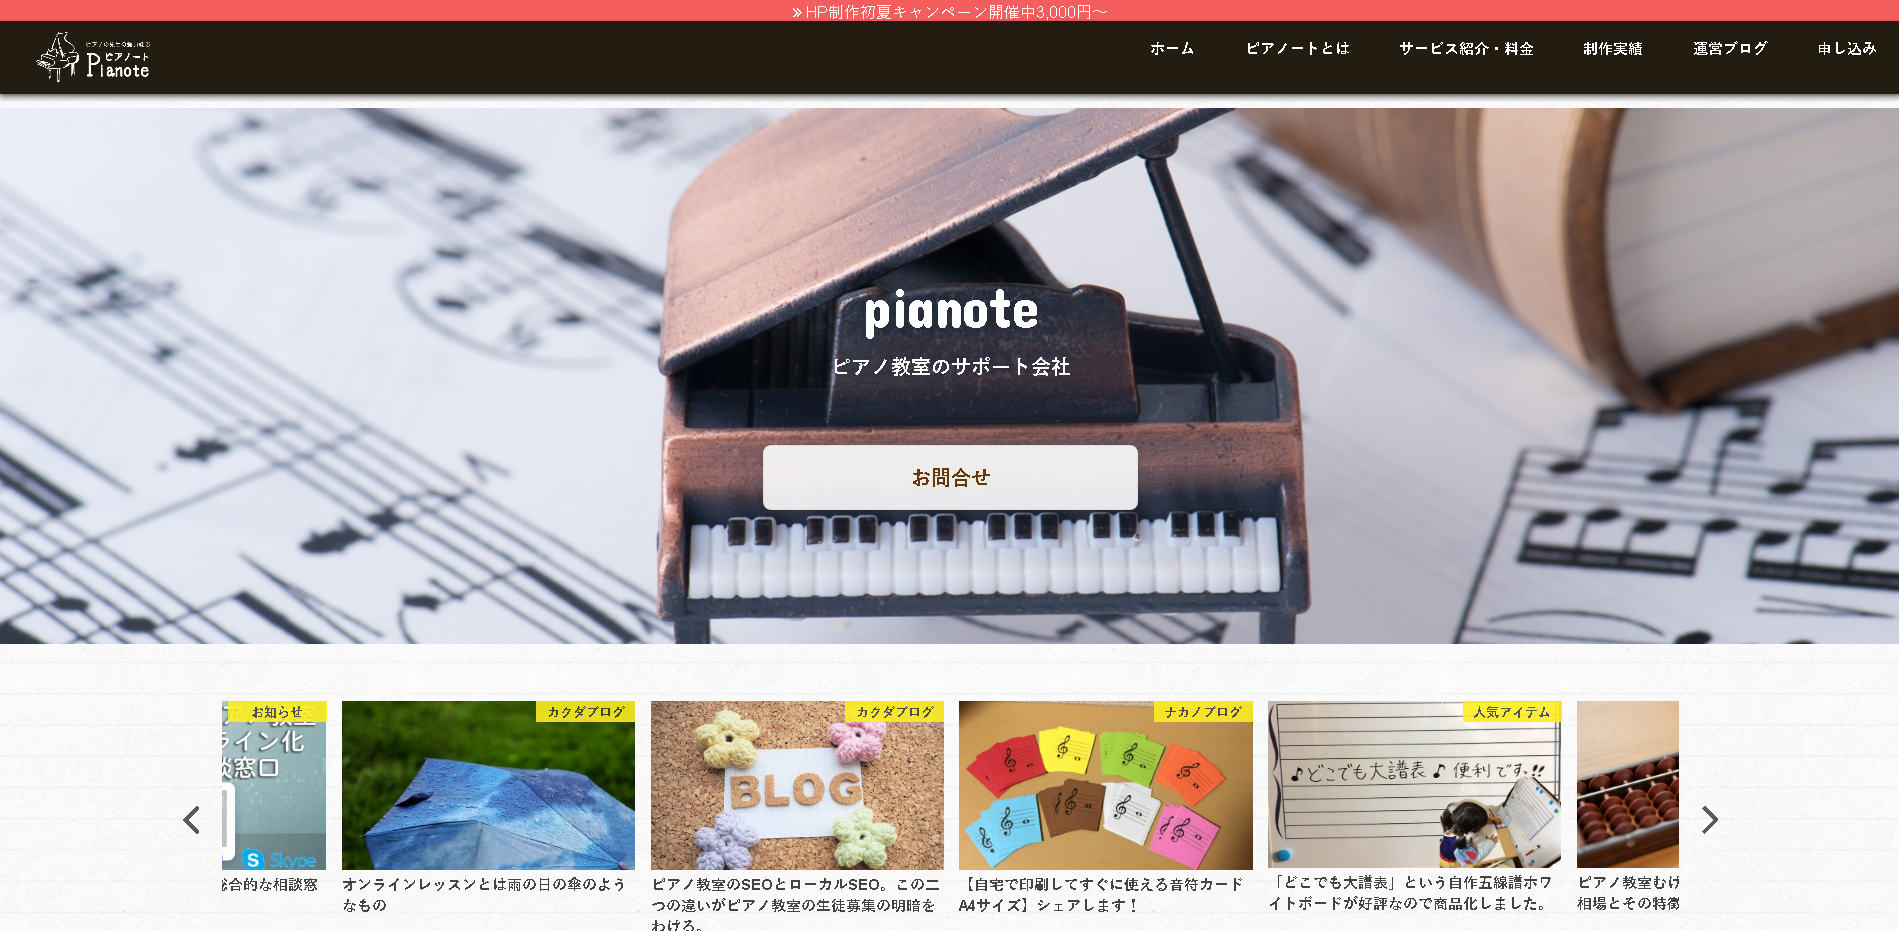 八幡制作舎のピアノートサービス